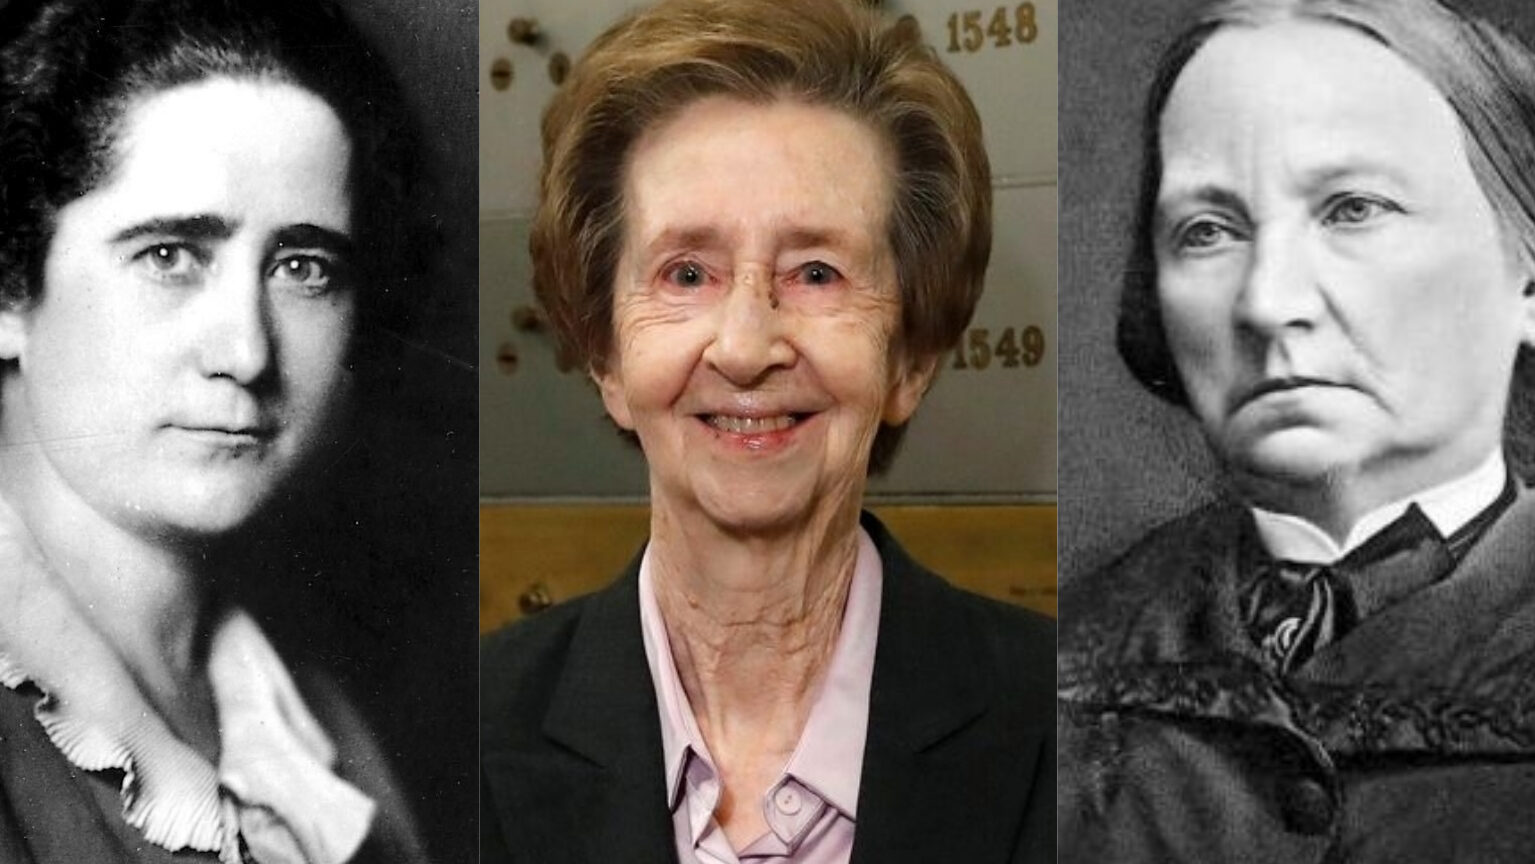 Mujeres influyentes a lo largo de la historia: ejemplos destacados.